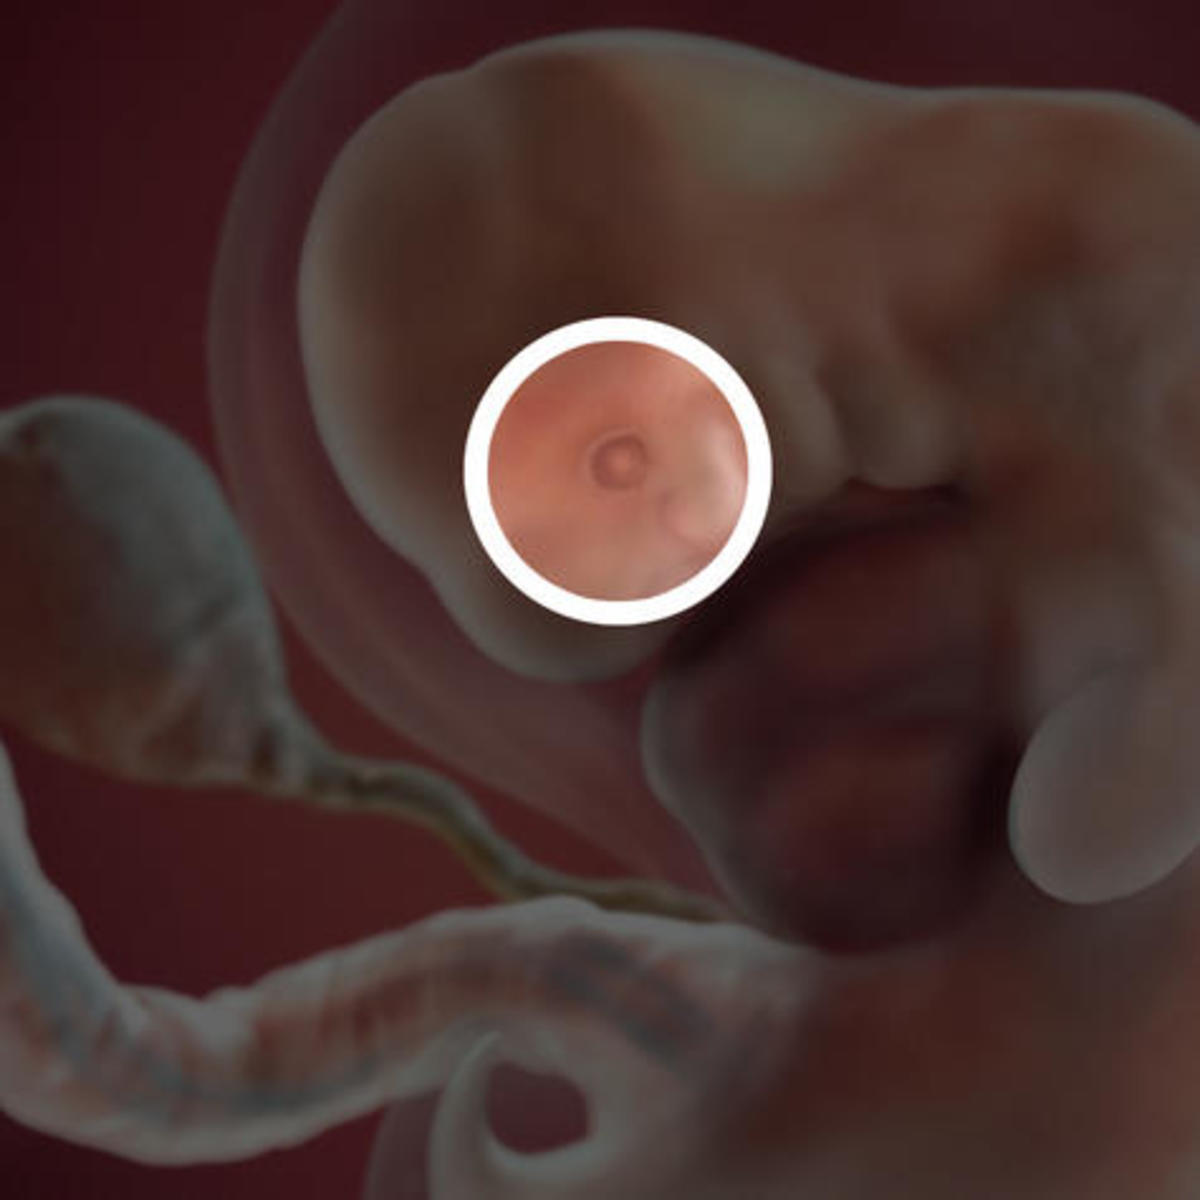 Embryo at Week 7